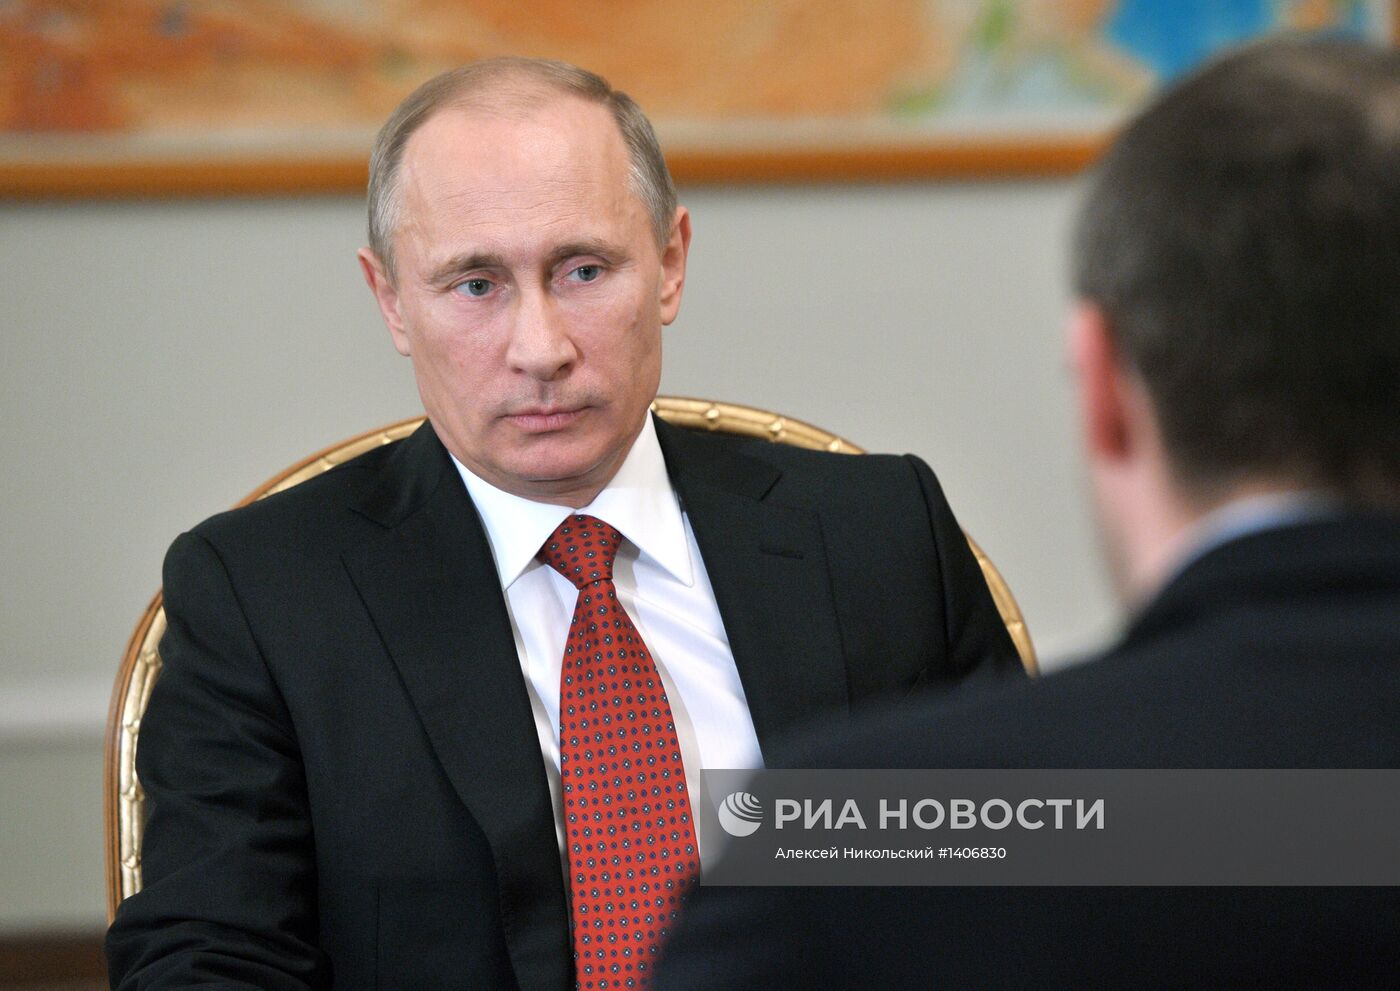 Встреча президента РФ Владимира Путина с Романом Копиным